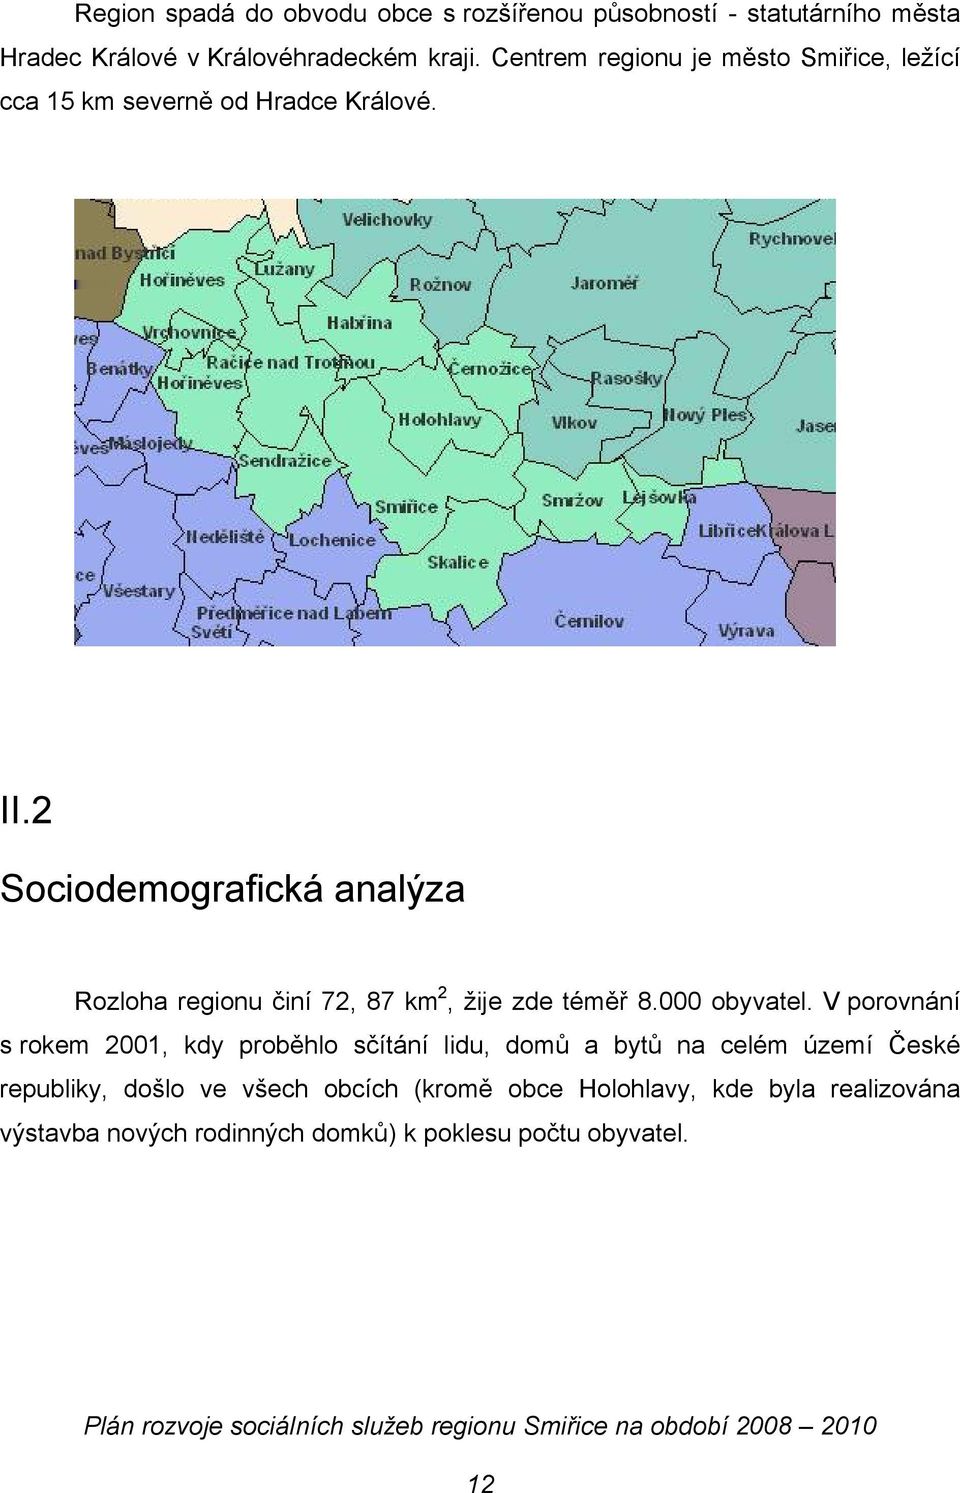 2 Sociodemografická analýza Rozloha regionu činí 72, 87 km 2, žije zde téměř 8.000 obyvatel.